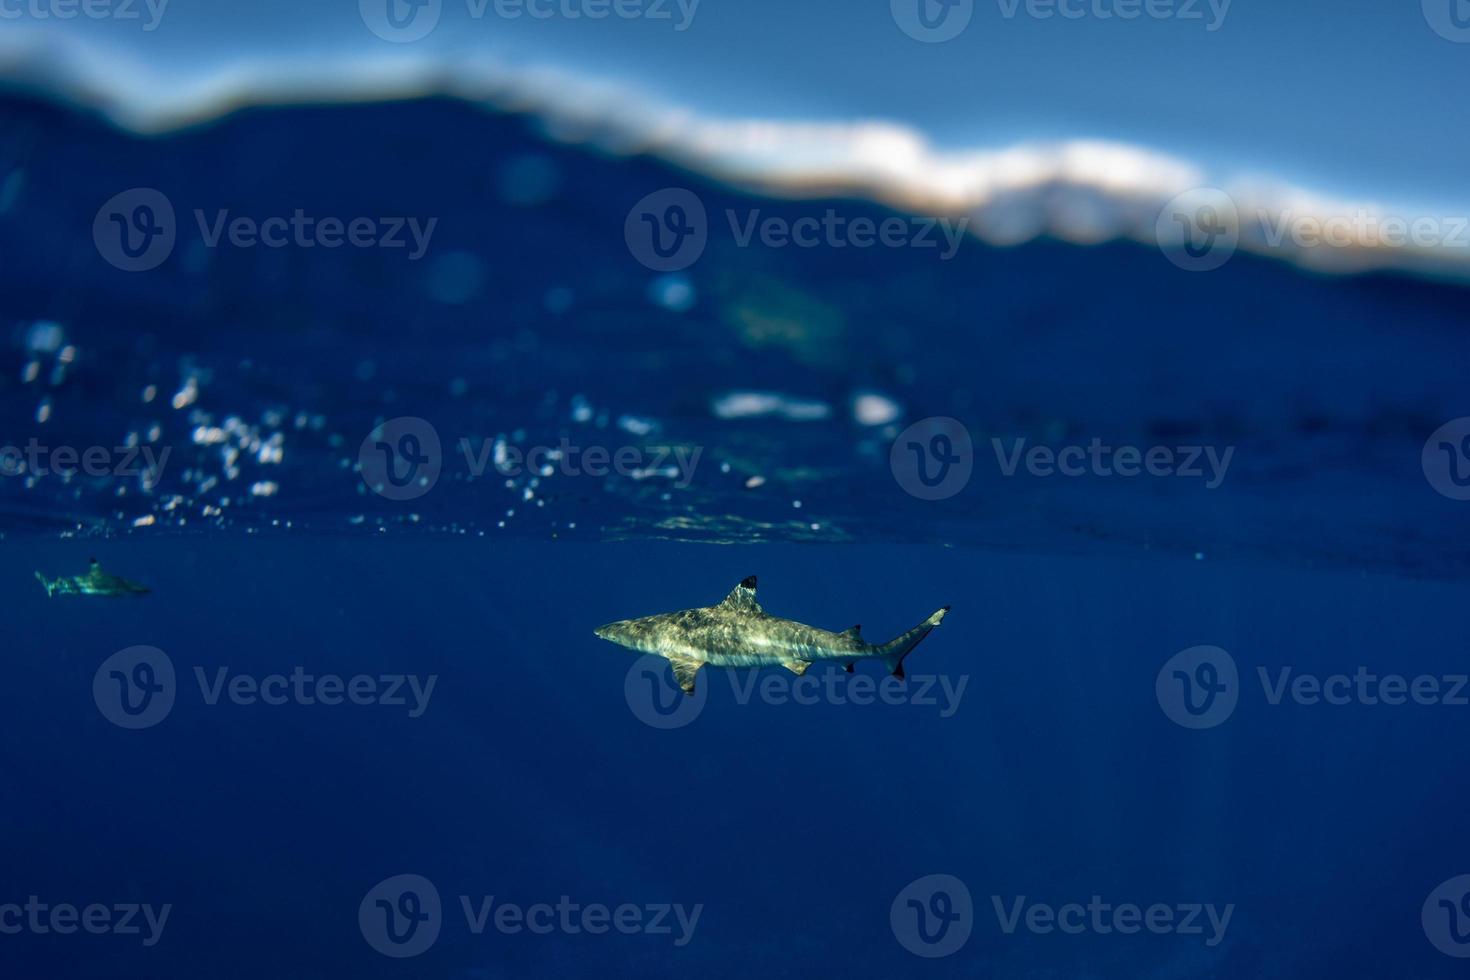 lo snorkeling con squali nel blu oceano di polinesia foto